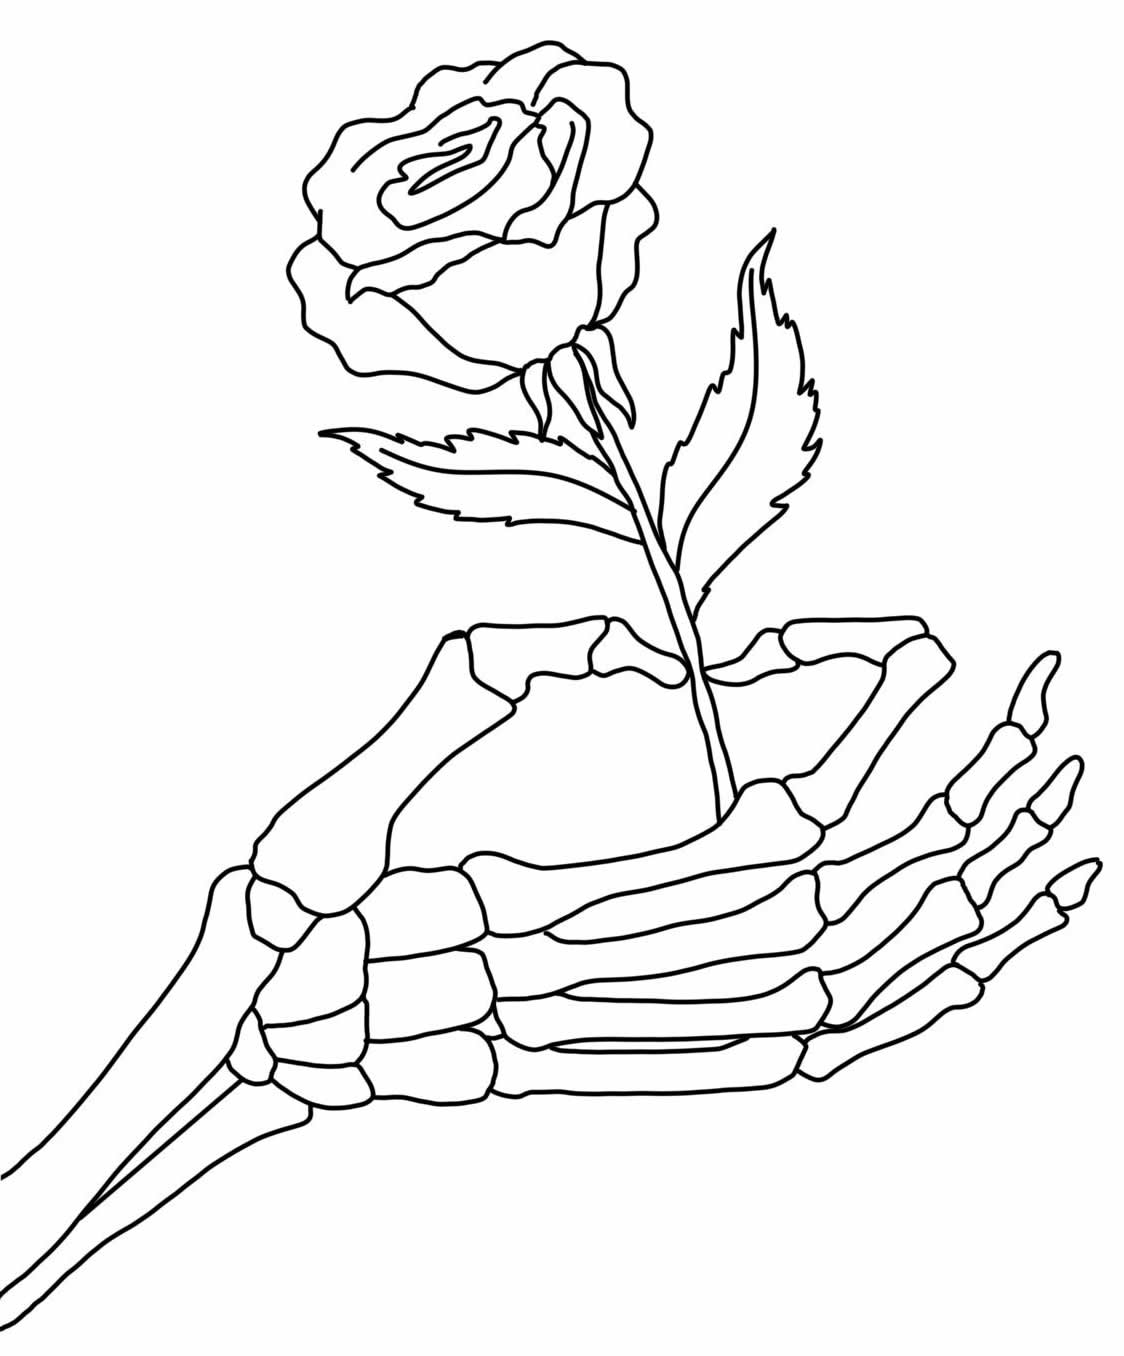 Desenho de Rosa para imprimir e pintar